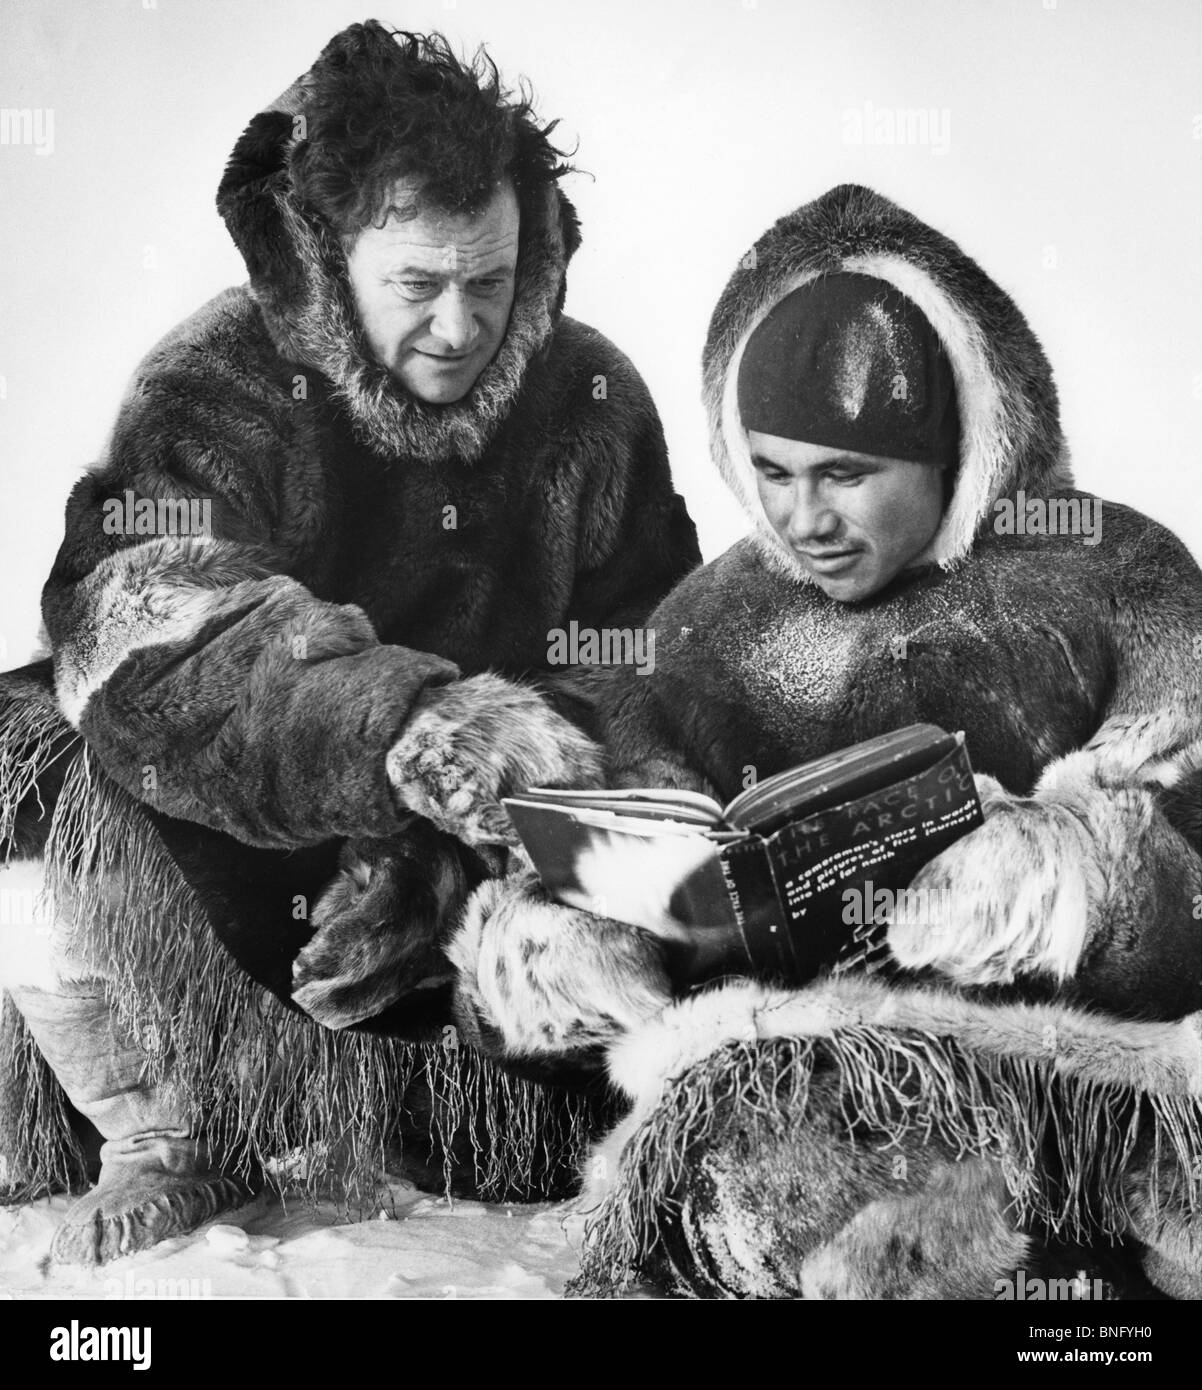 Arktis, zwei Männer im Pelz sitzen und lesen Buch Stockfoto